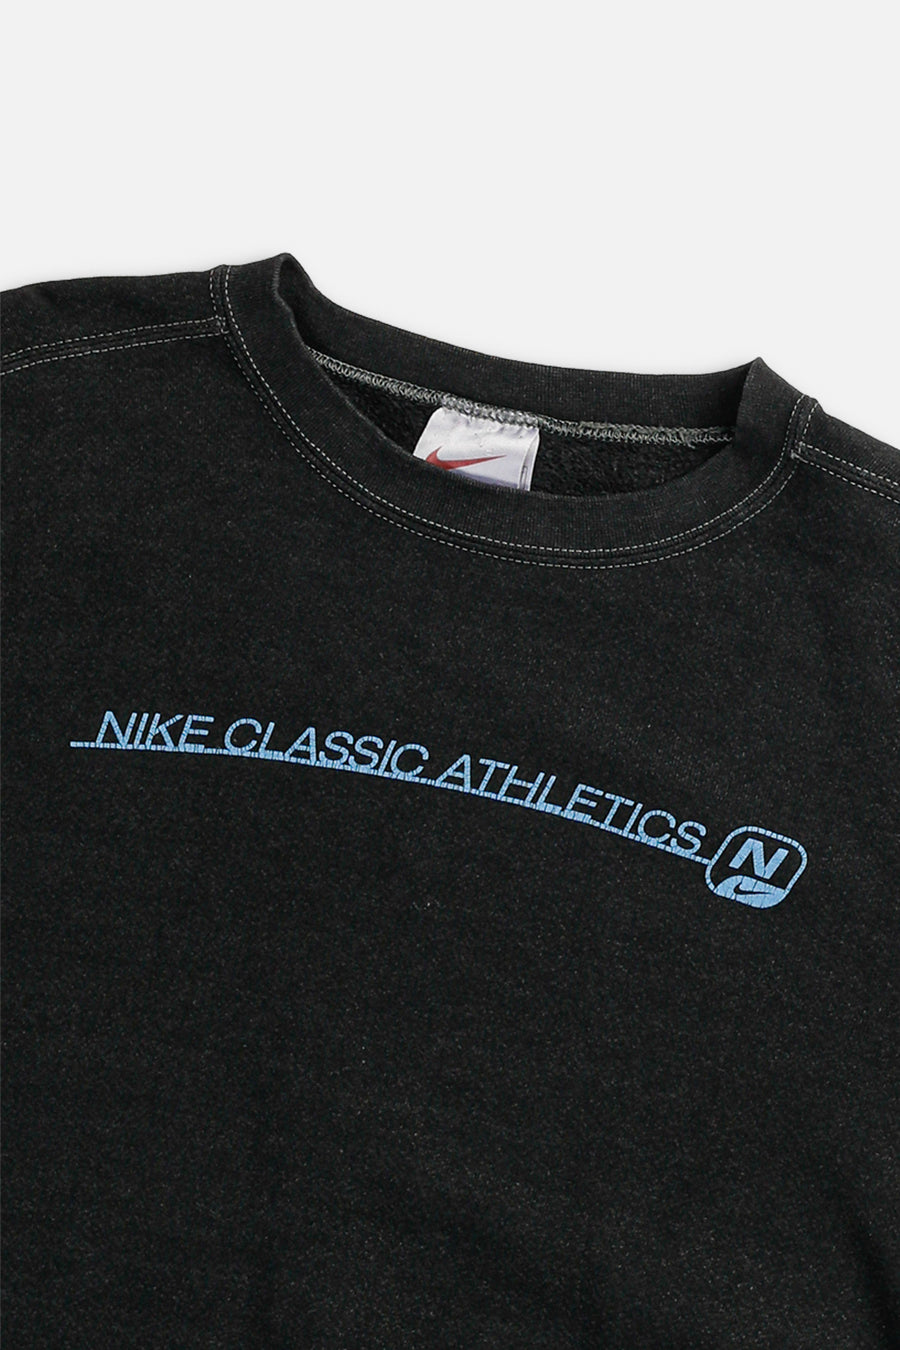 Vintage Nike Athletics Sweatshirt - M